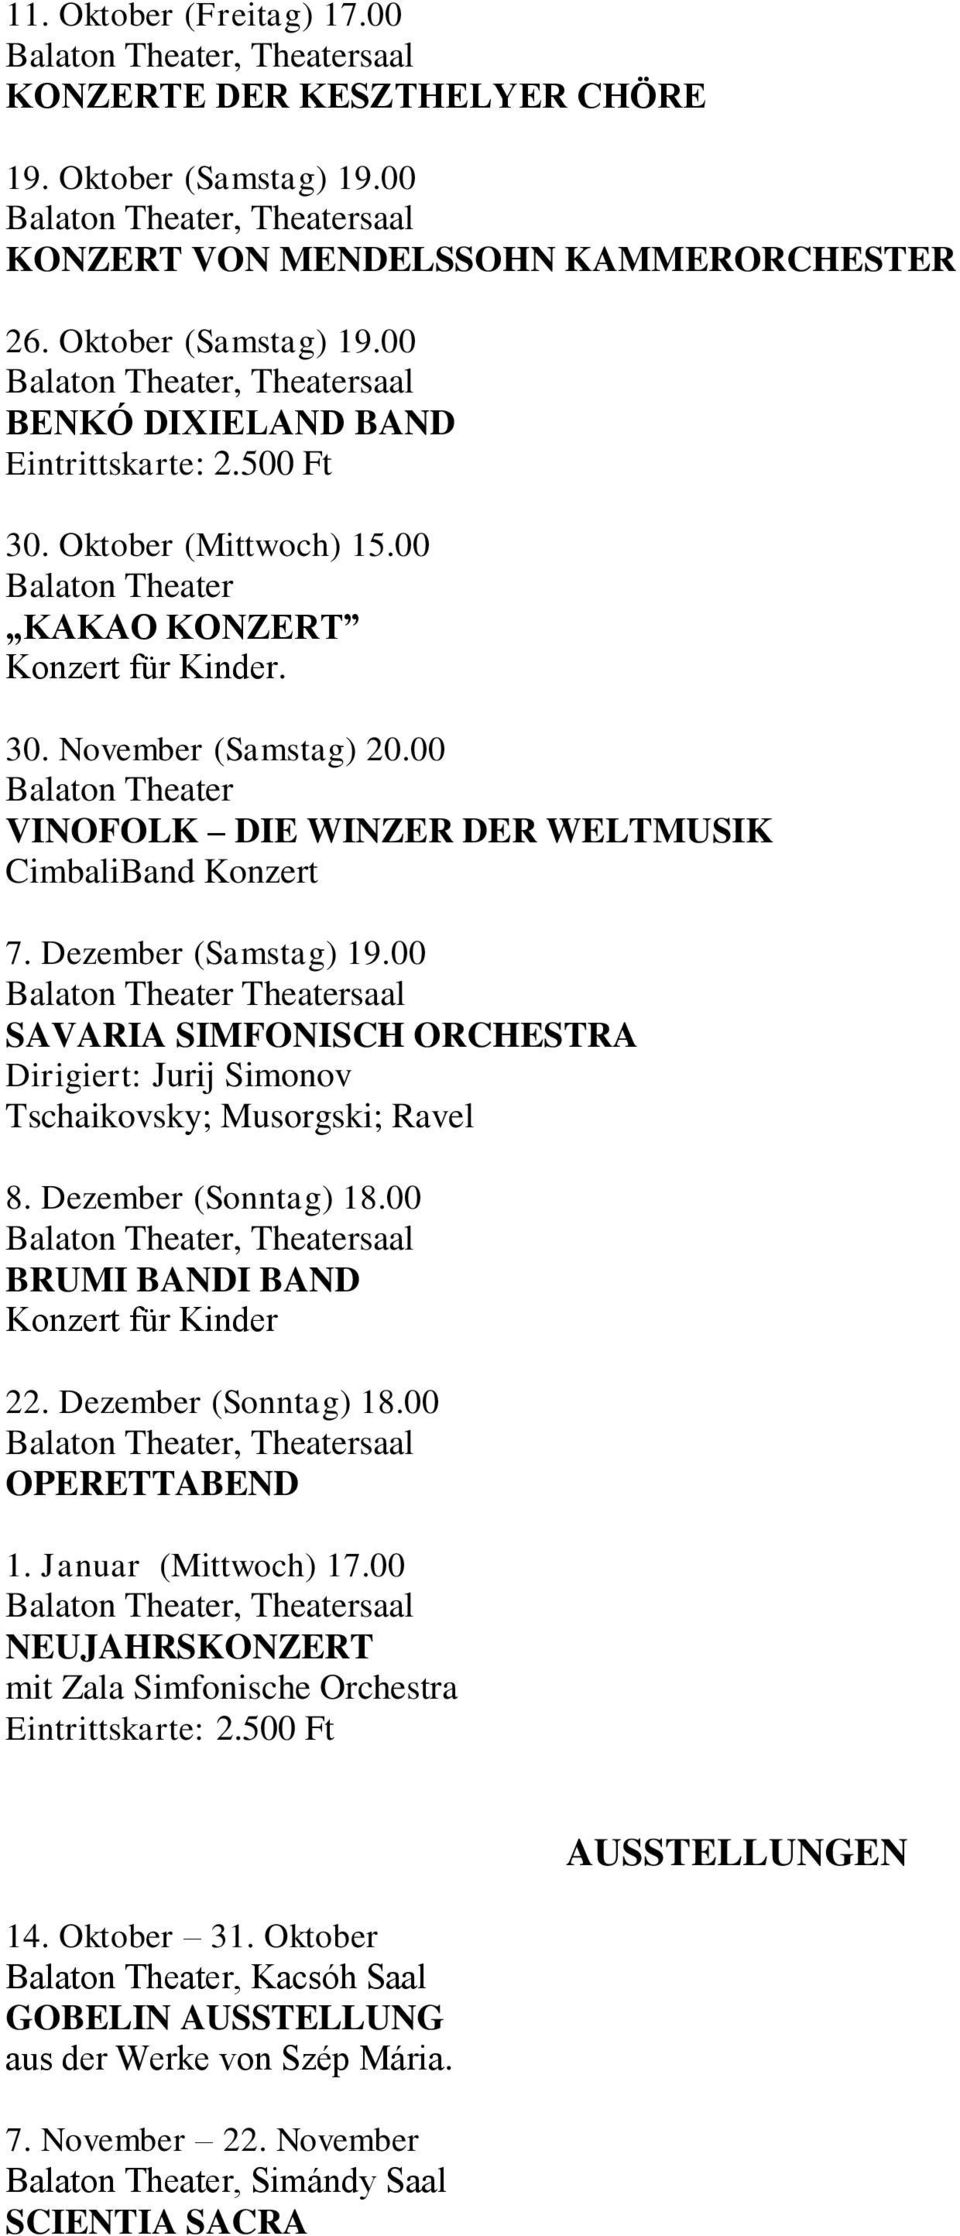 00 Balaton Theater VINOFOLK DIE WINZER DER WELTMUSIK CimbaliBand Konzert 7. Dezember (Samstag) 19.